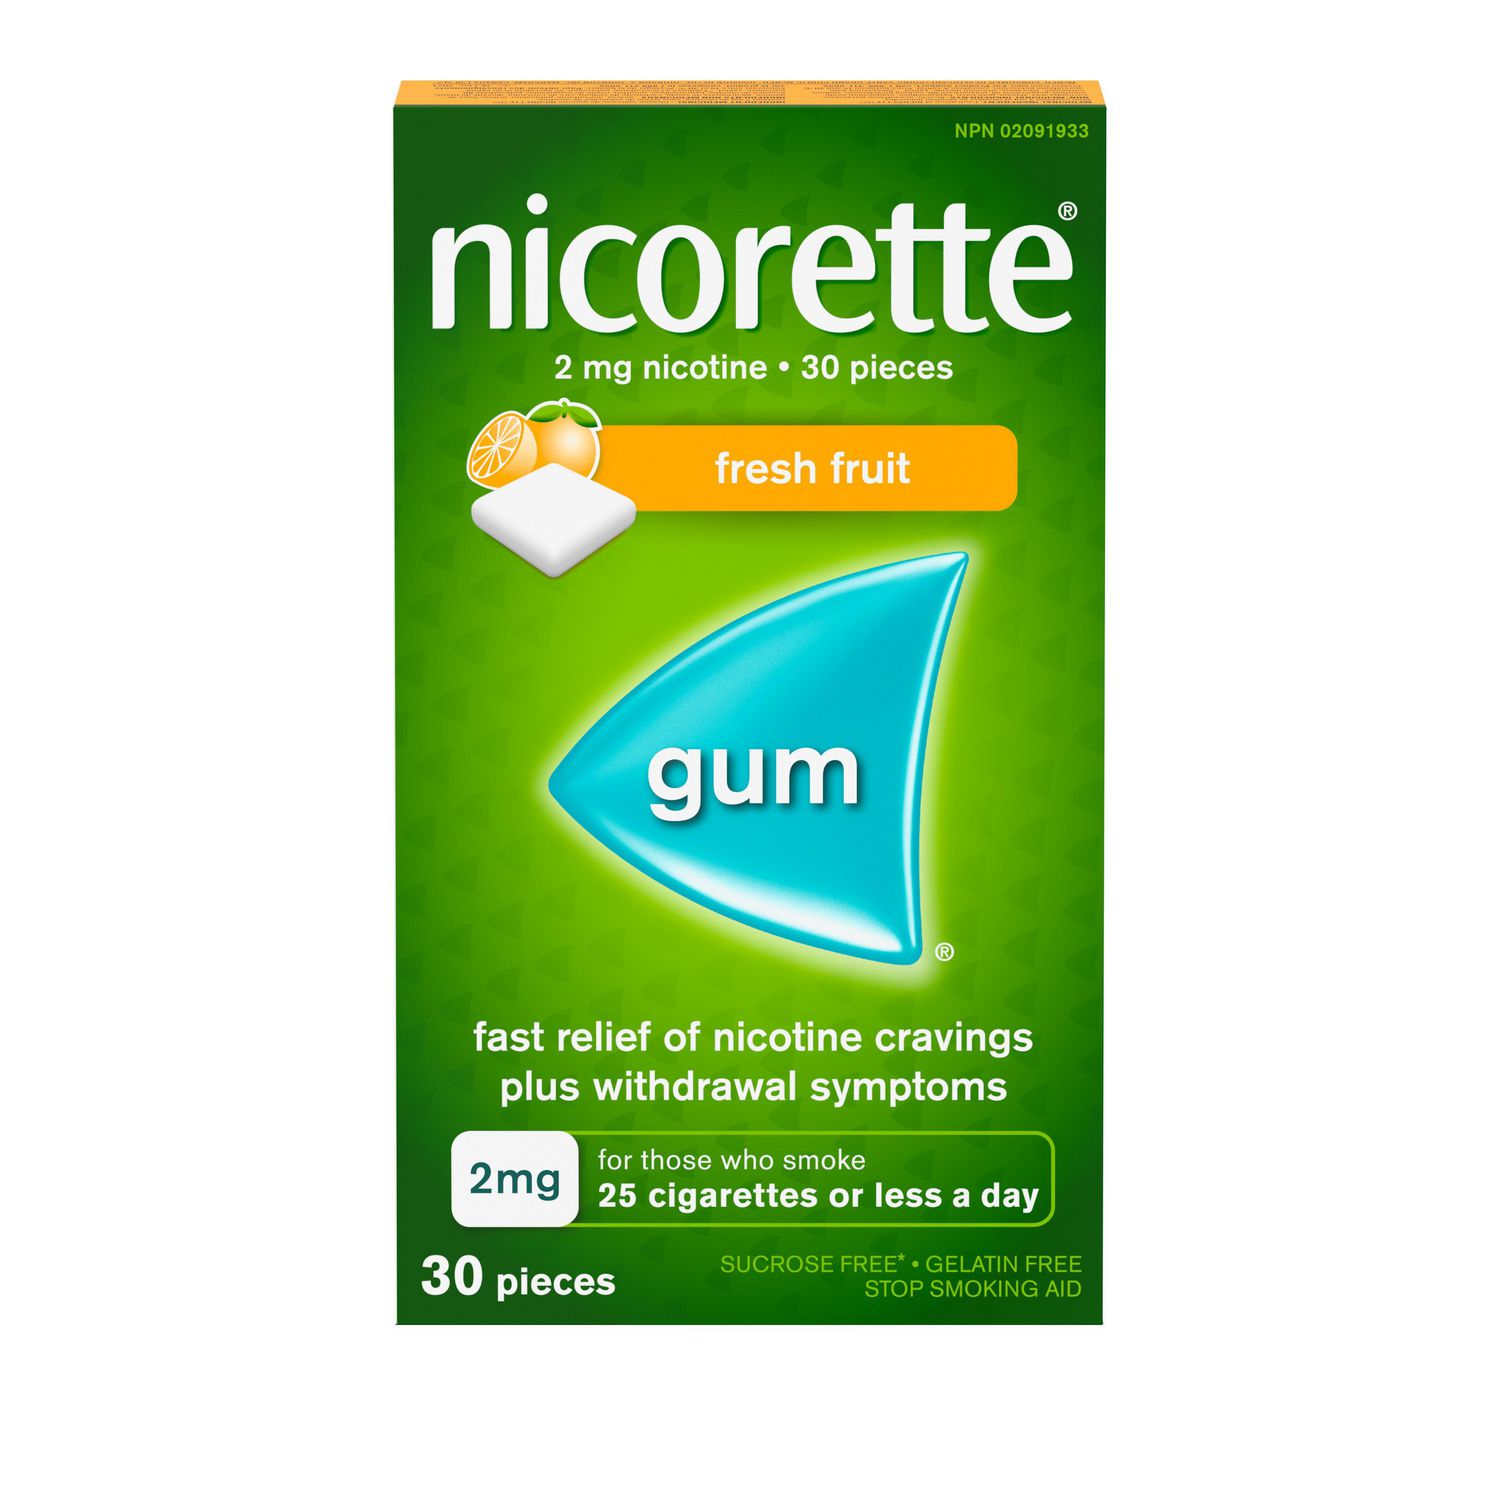 nicorette-nicotine-gum-quit-smoking-aid-fresh-fruit-2mg-walmart-canada